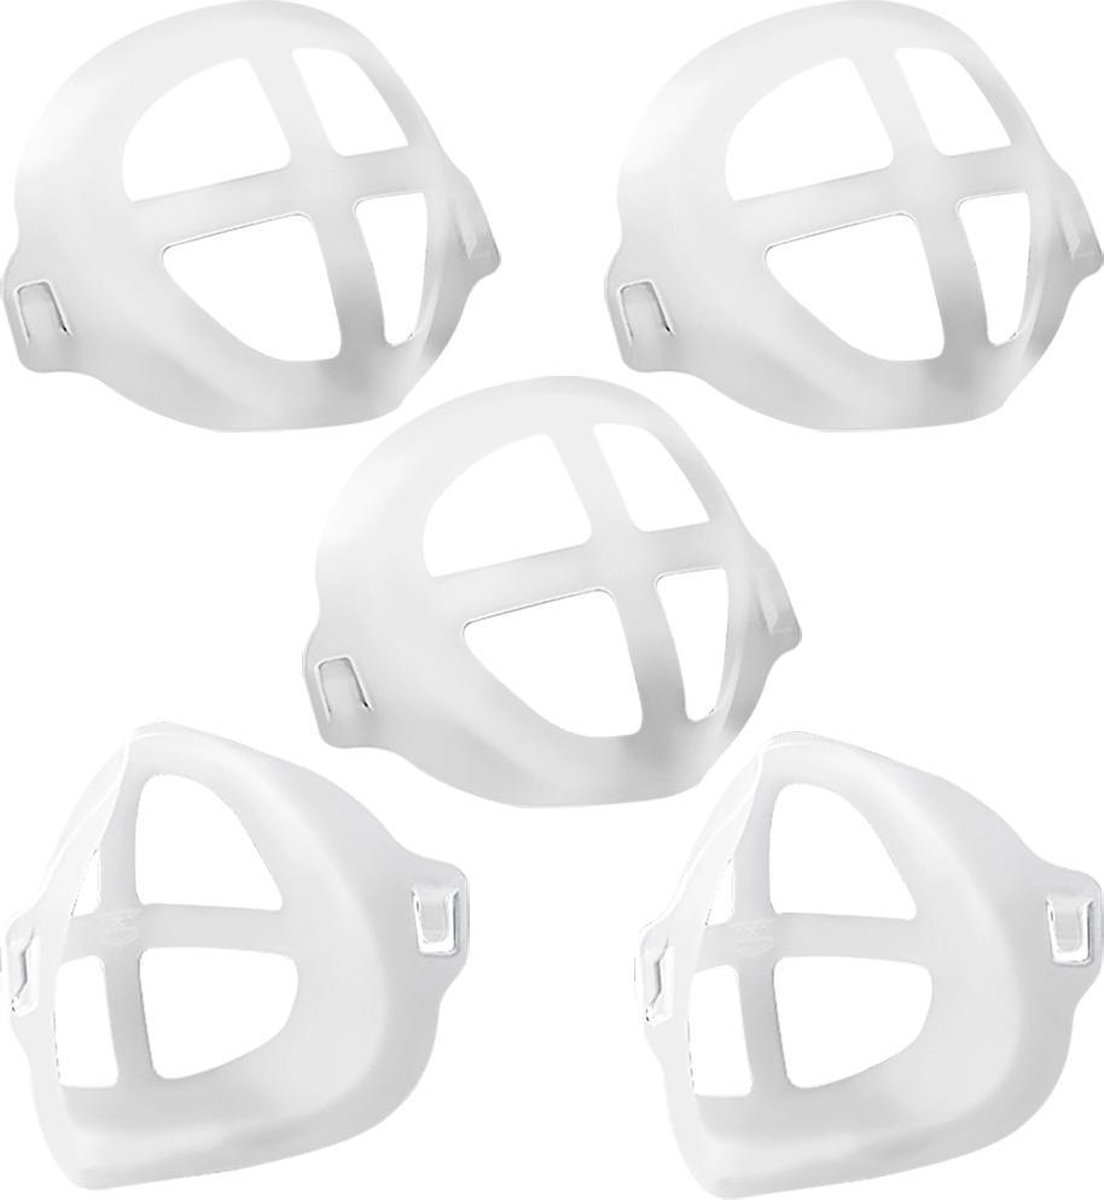 Transparante mondmasker - Keuken mondmasker - Transparante mondkapje - Plastic Mondmasker - Merkloos